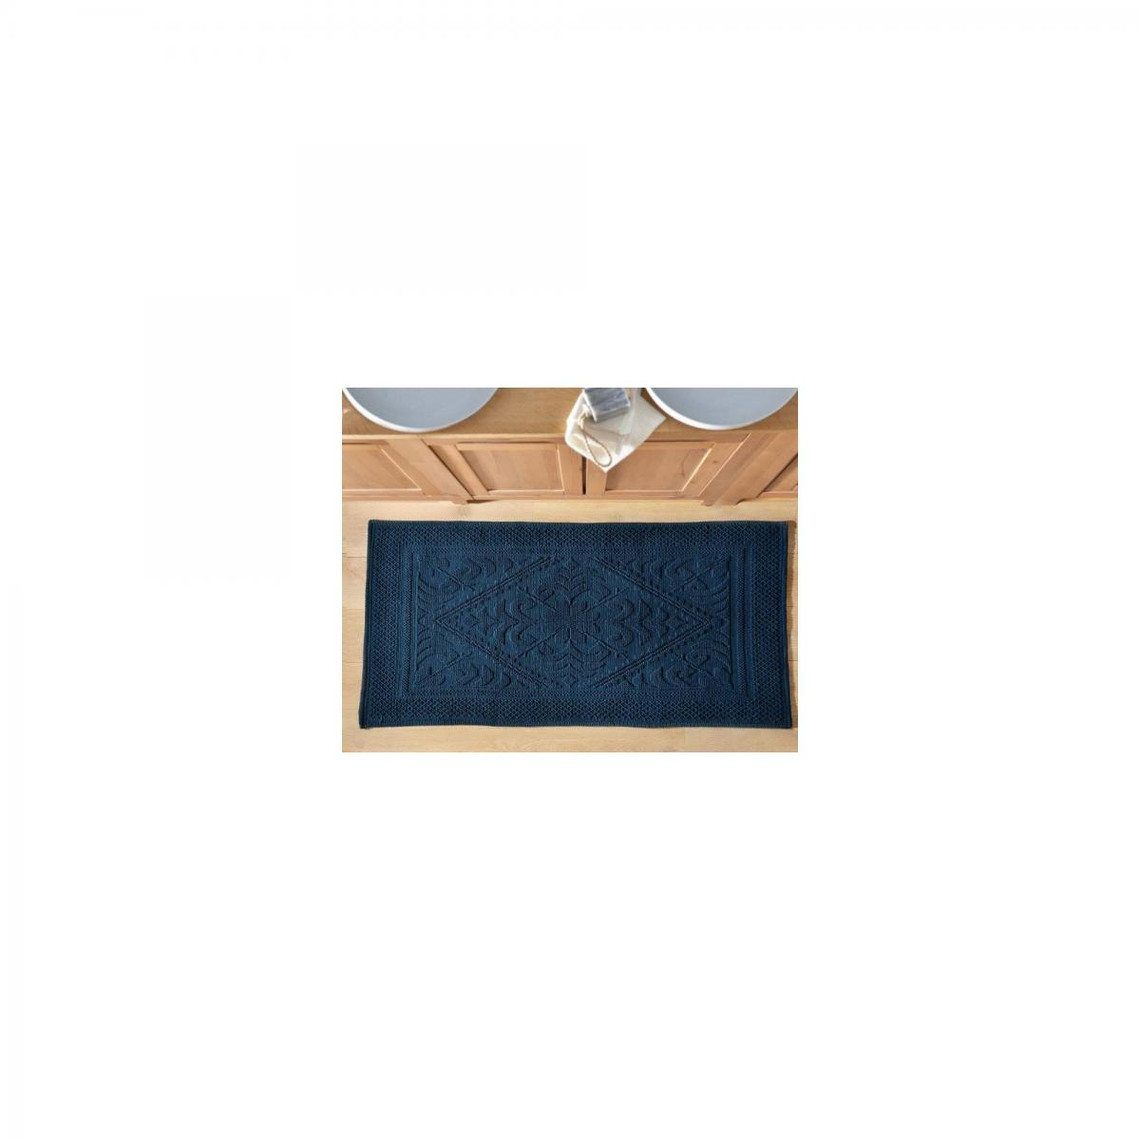 Tapis de bain décor jacquard 1500g/m2 - Bleu Marinevoir